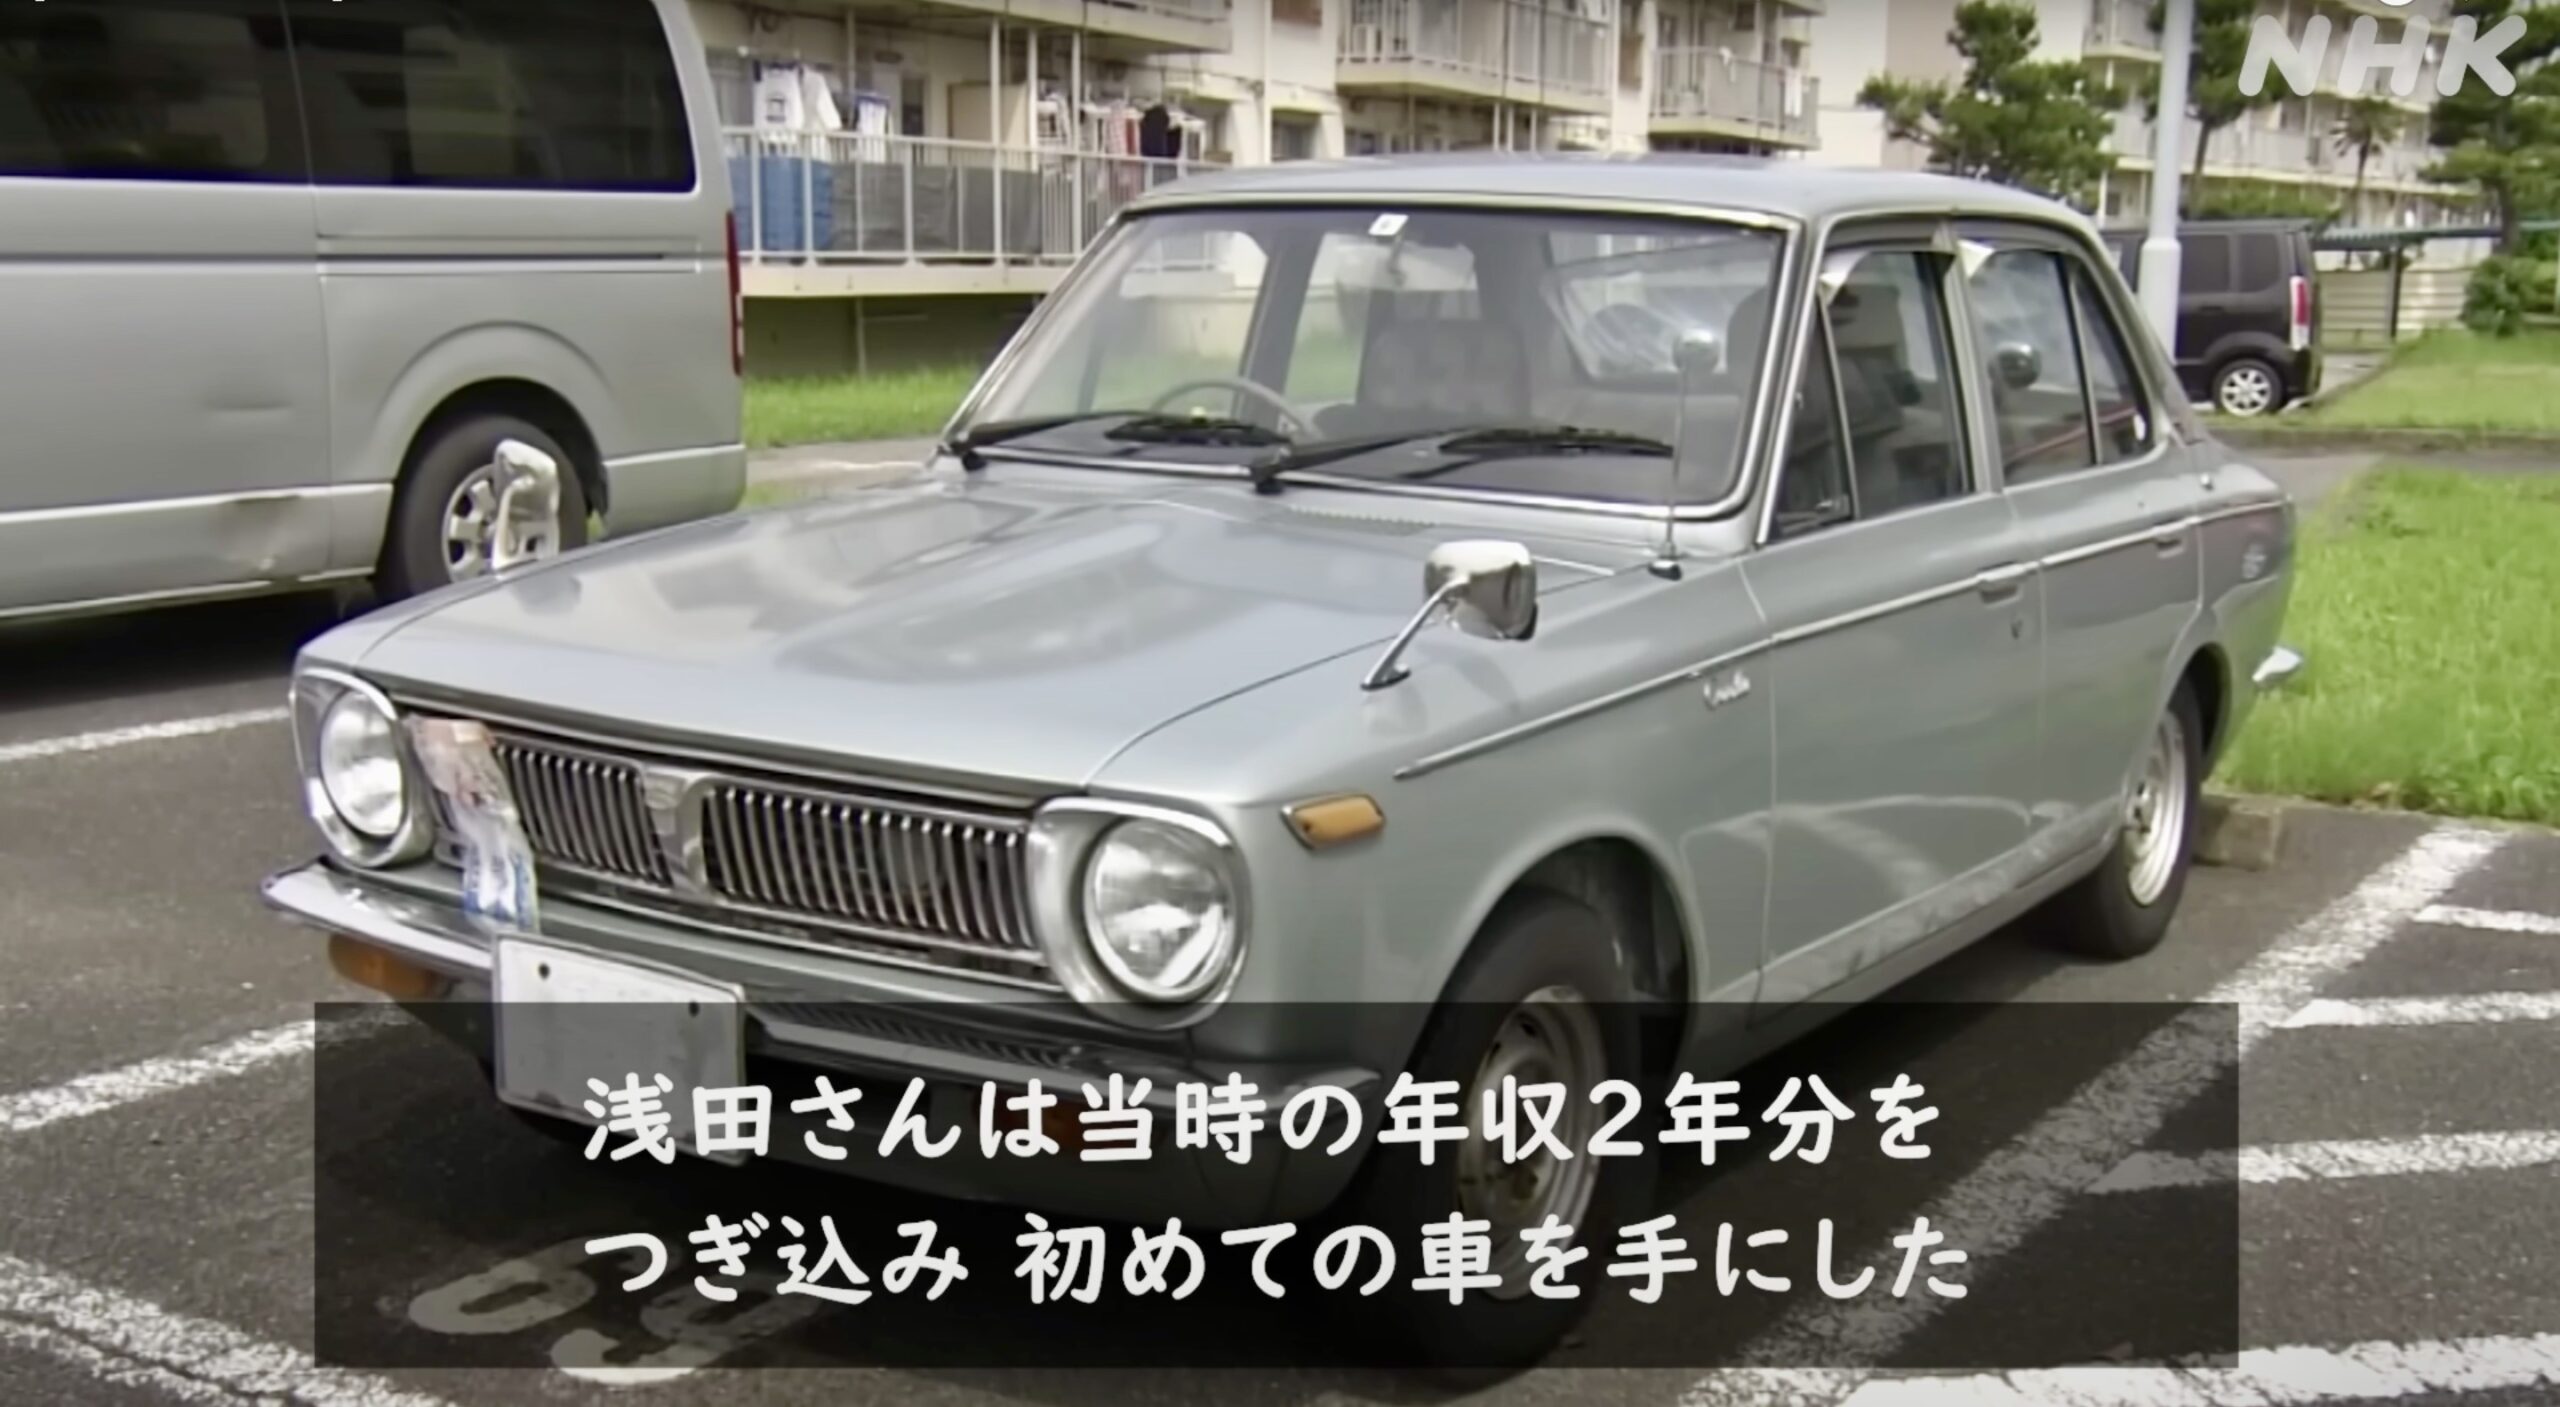 经过53年的日常驾驶，这辆只有一个主人的1969年丰田花冠将退休到博物馆